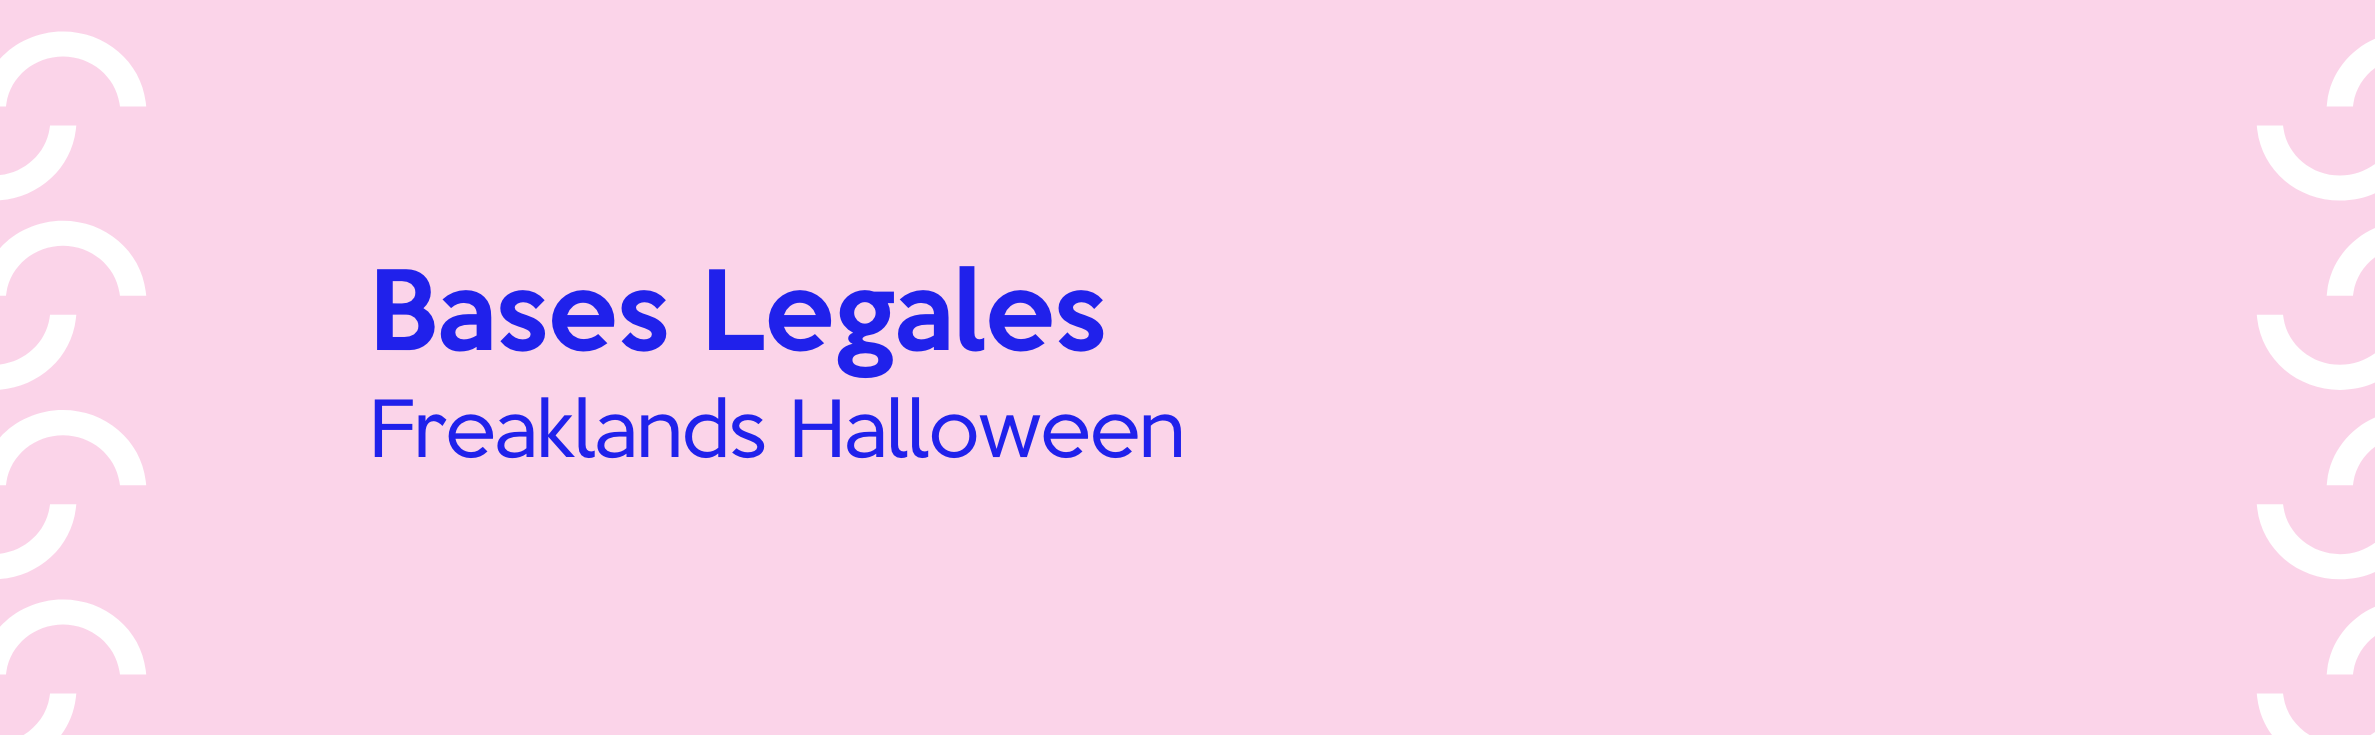 Bases legales “Freaklands Halloween” de Open Plaza